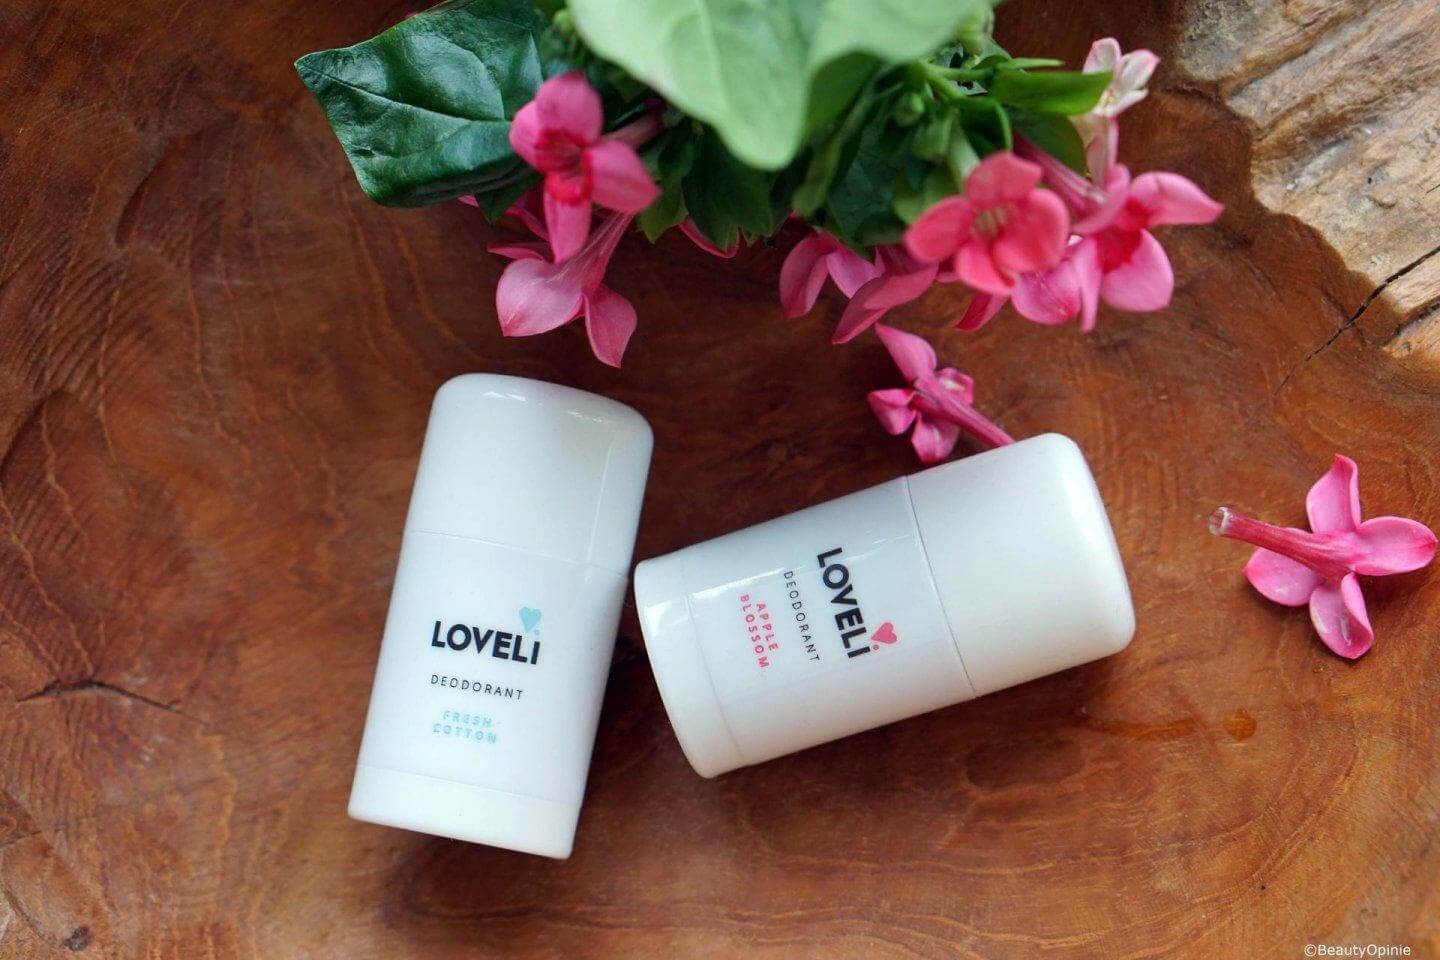 Loveli-natuurlijke-deodorant-review-1440x960